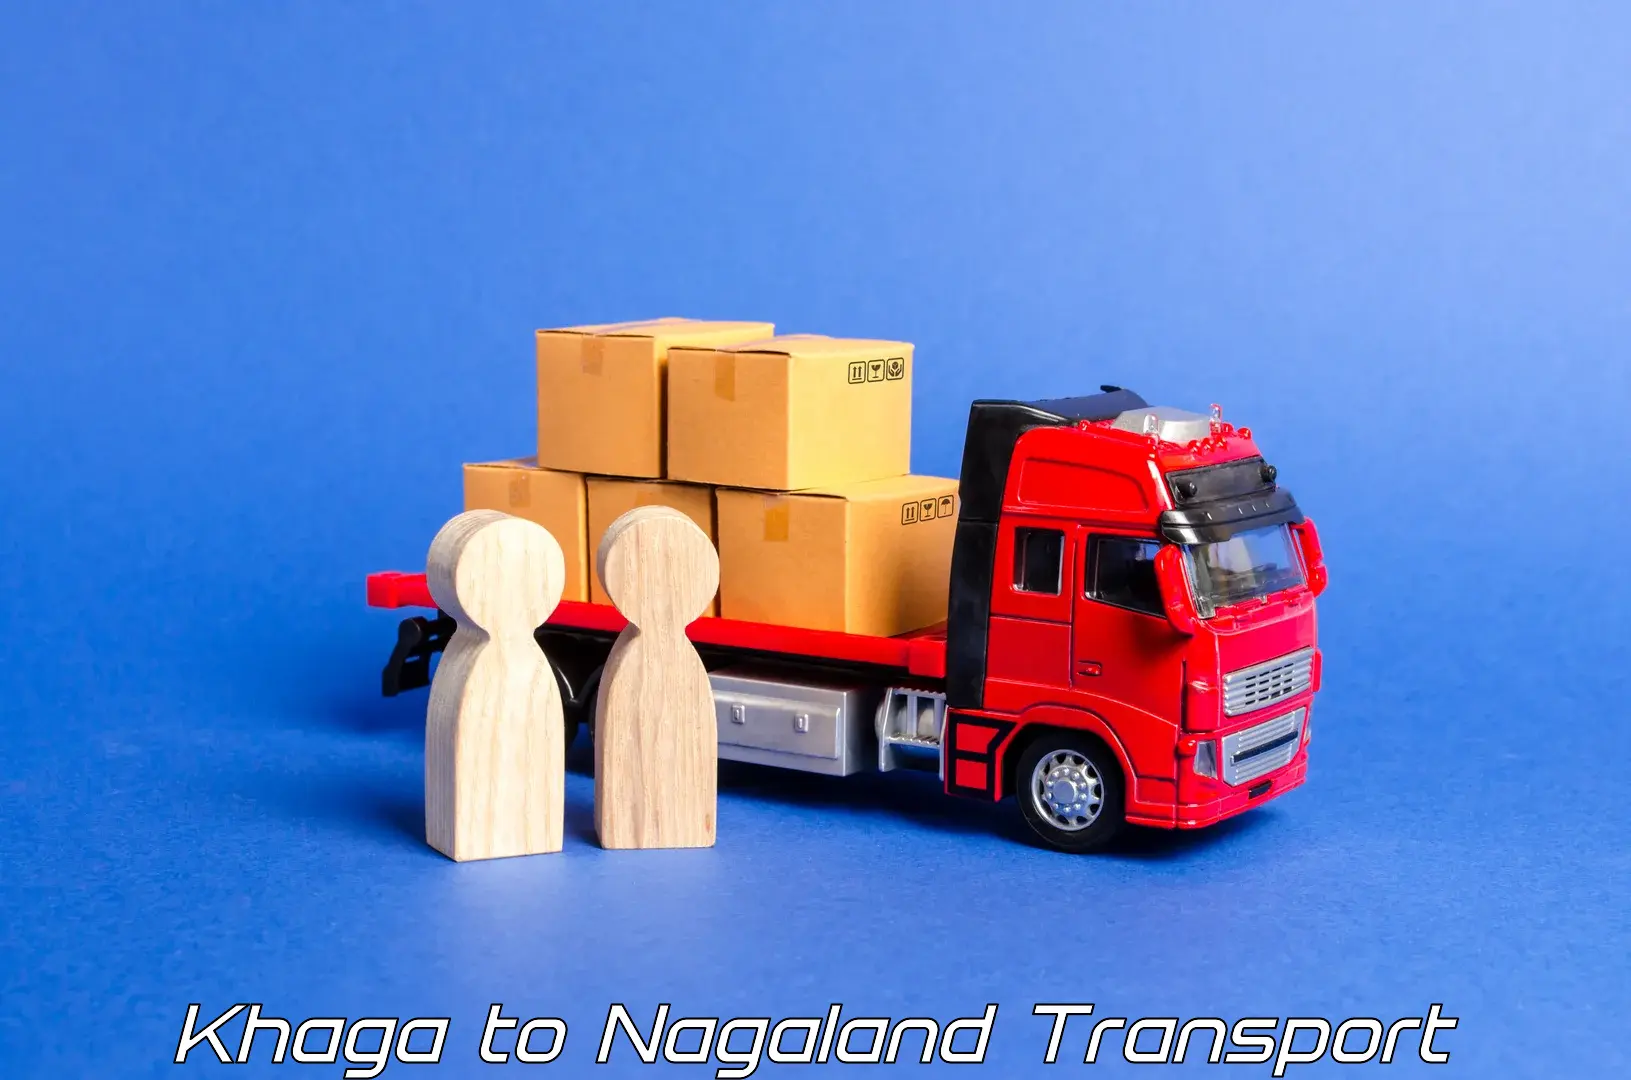 Luggage transport services Khaga to Nagaland